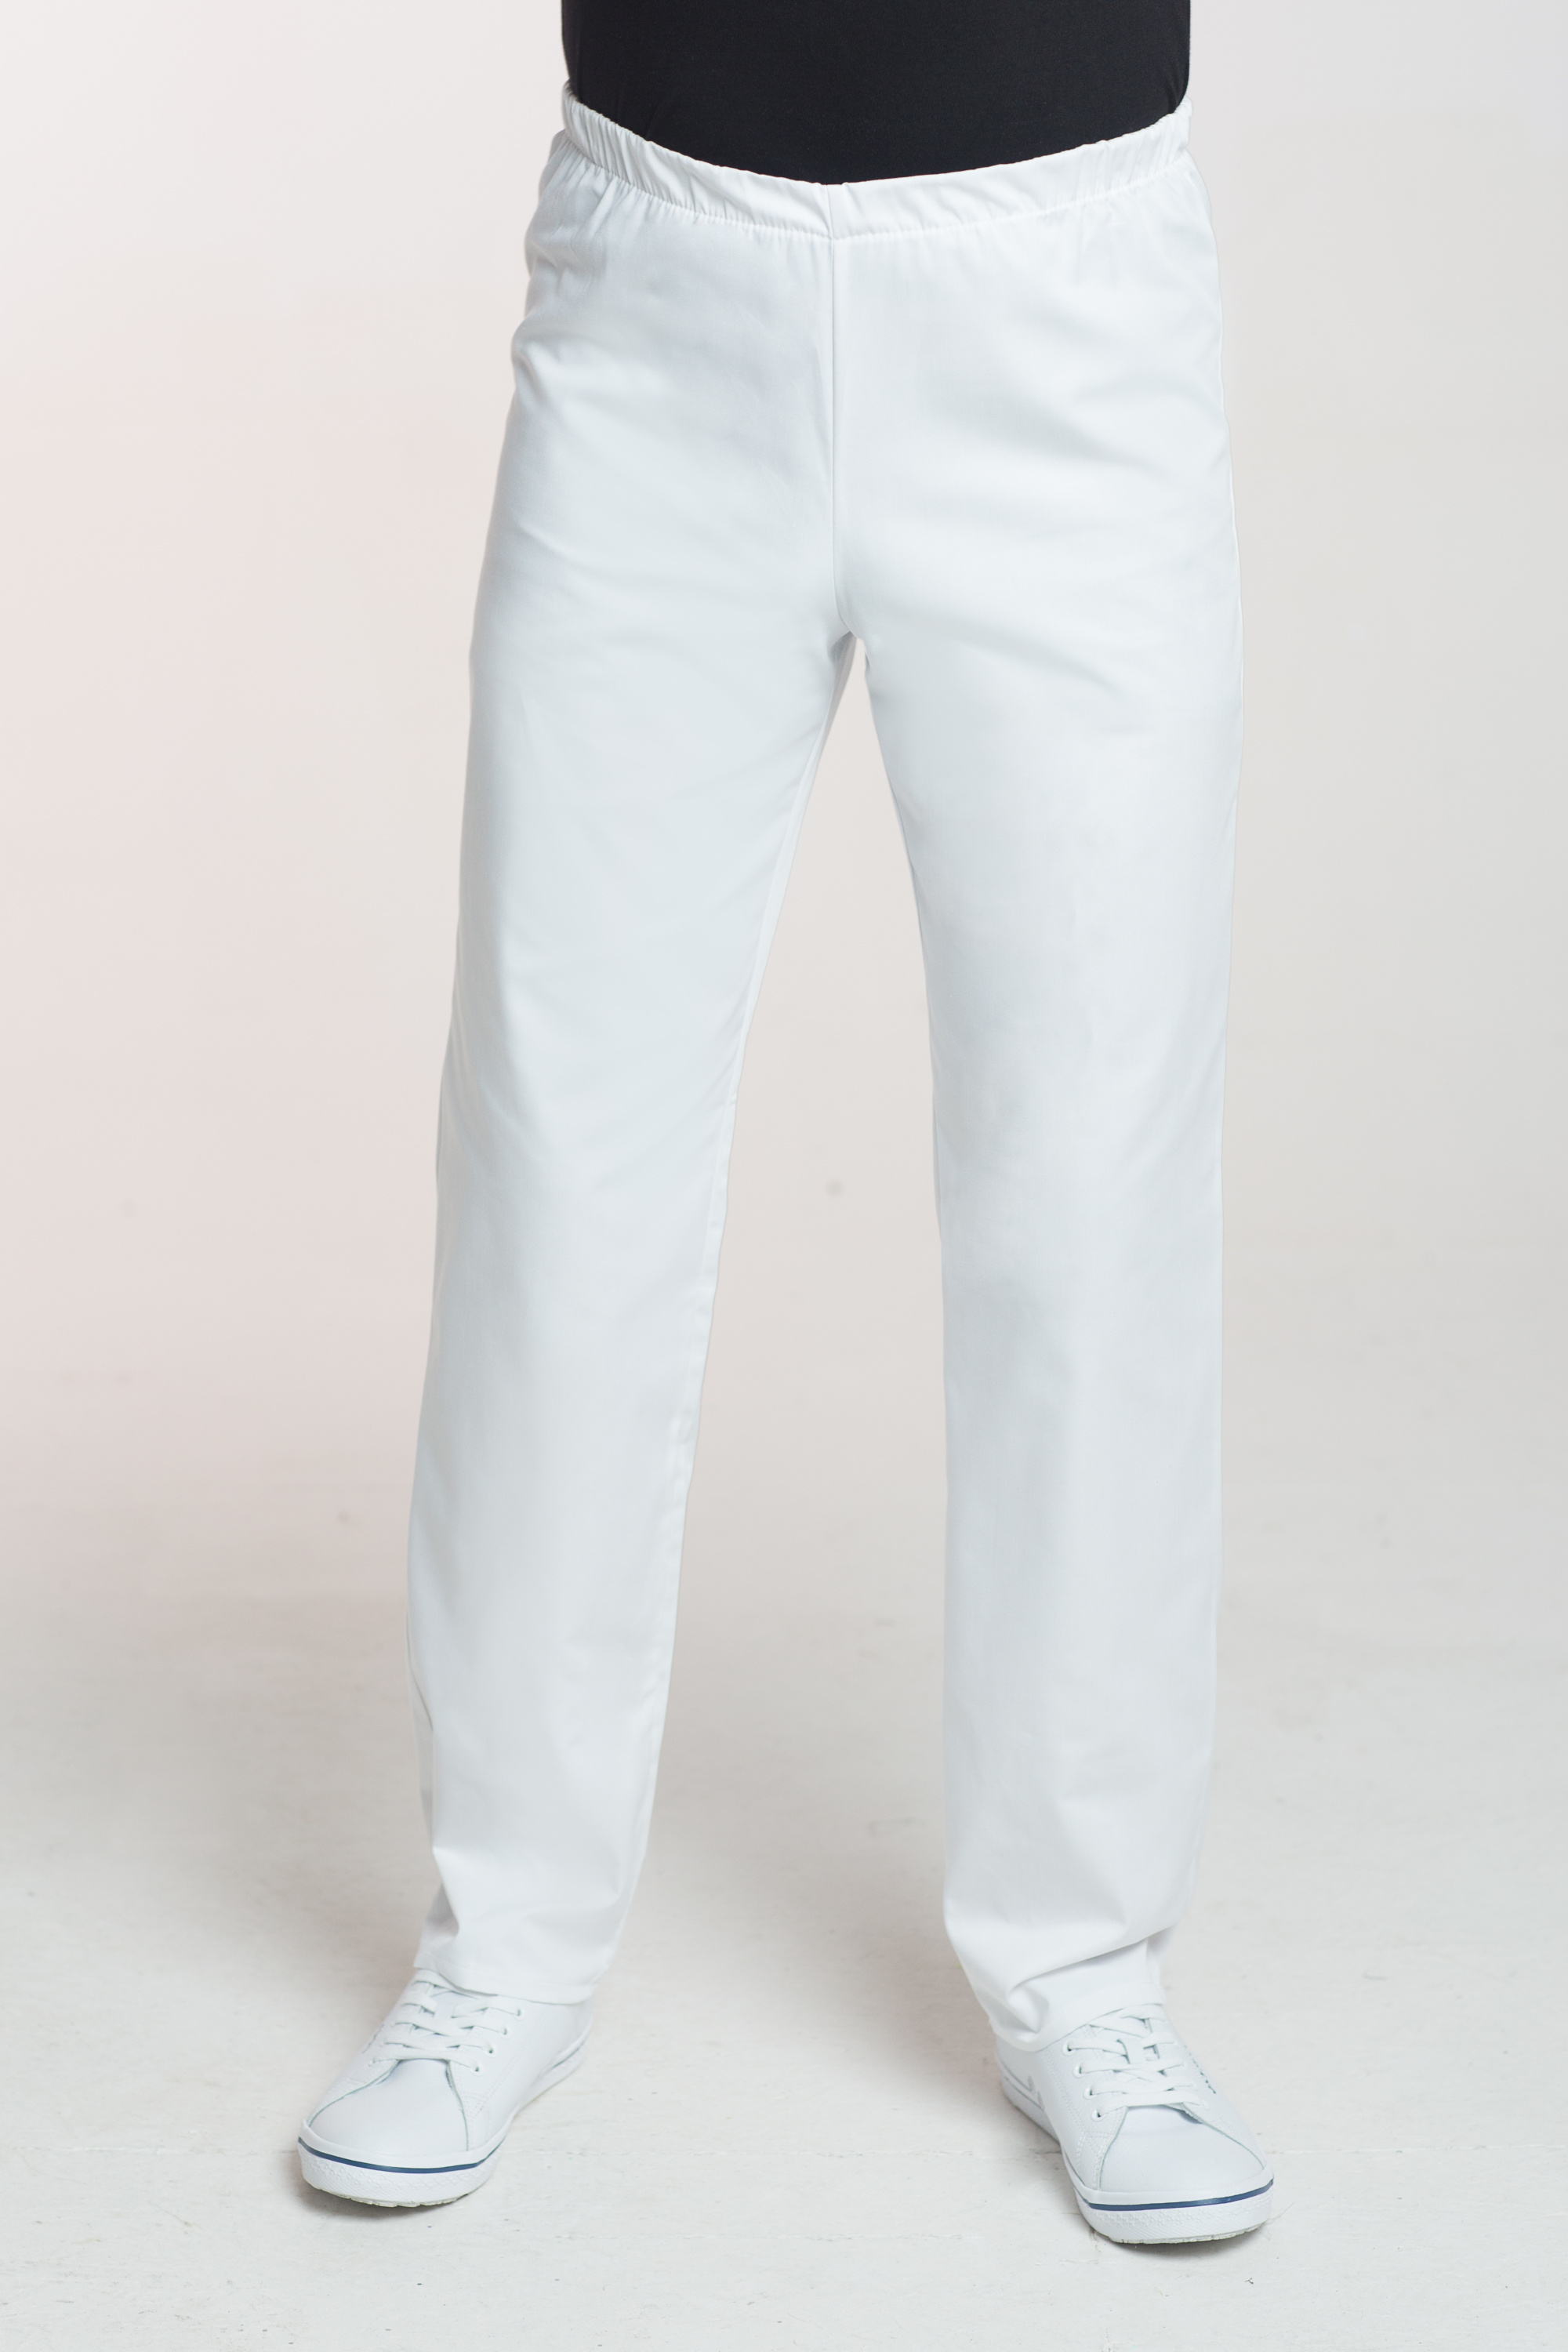 Pánské zdravotnické kalhoty v pase do gumy M-075C, bílá